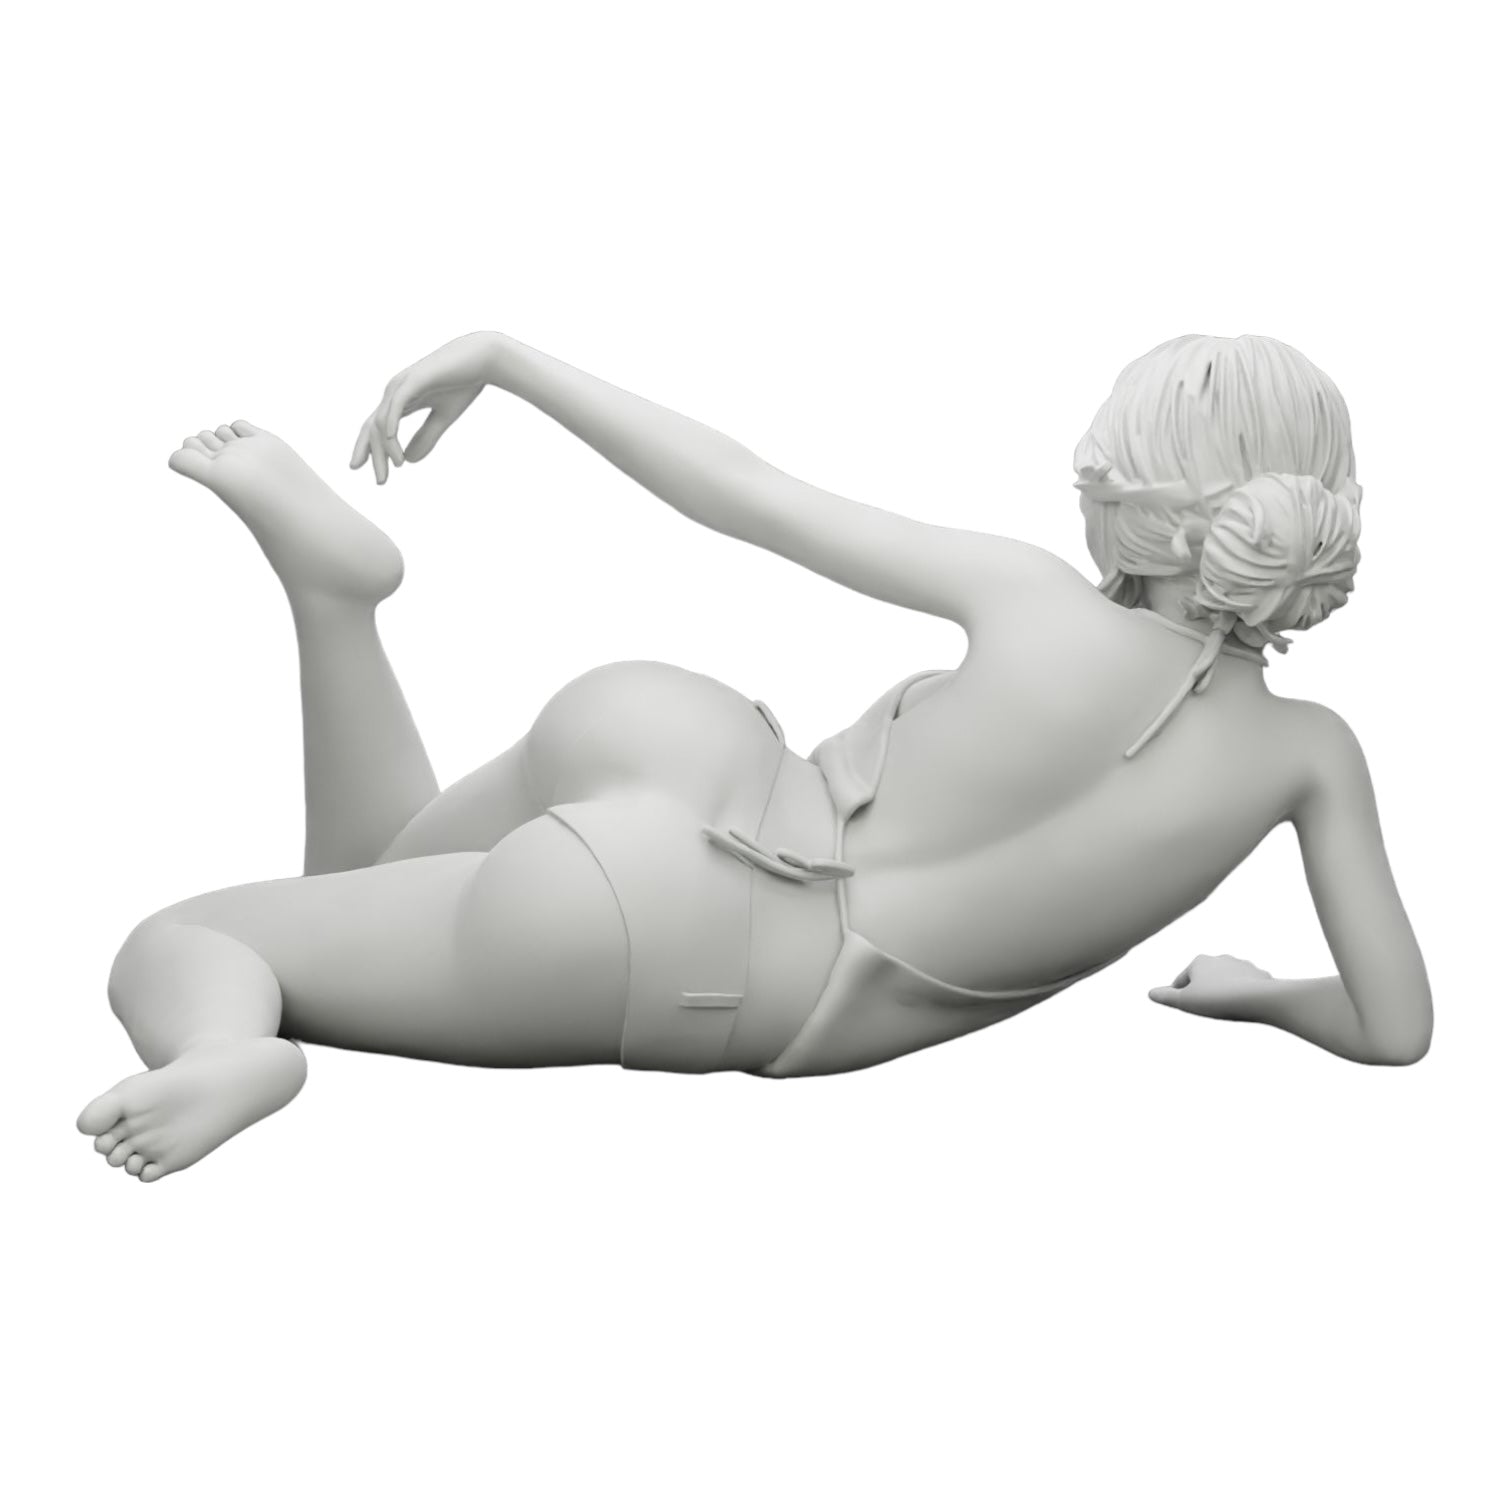 Diorama Modellbau Produktfoto 0: Sexy Mädchen mit Sonnenbrille und Bikini am Sandstrand (Ref Nr. A33)